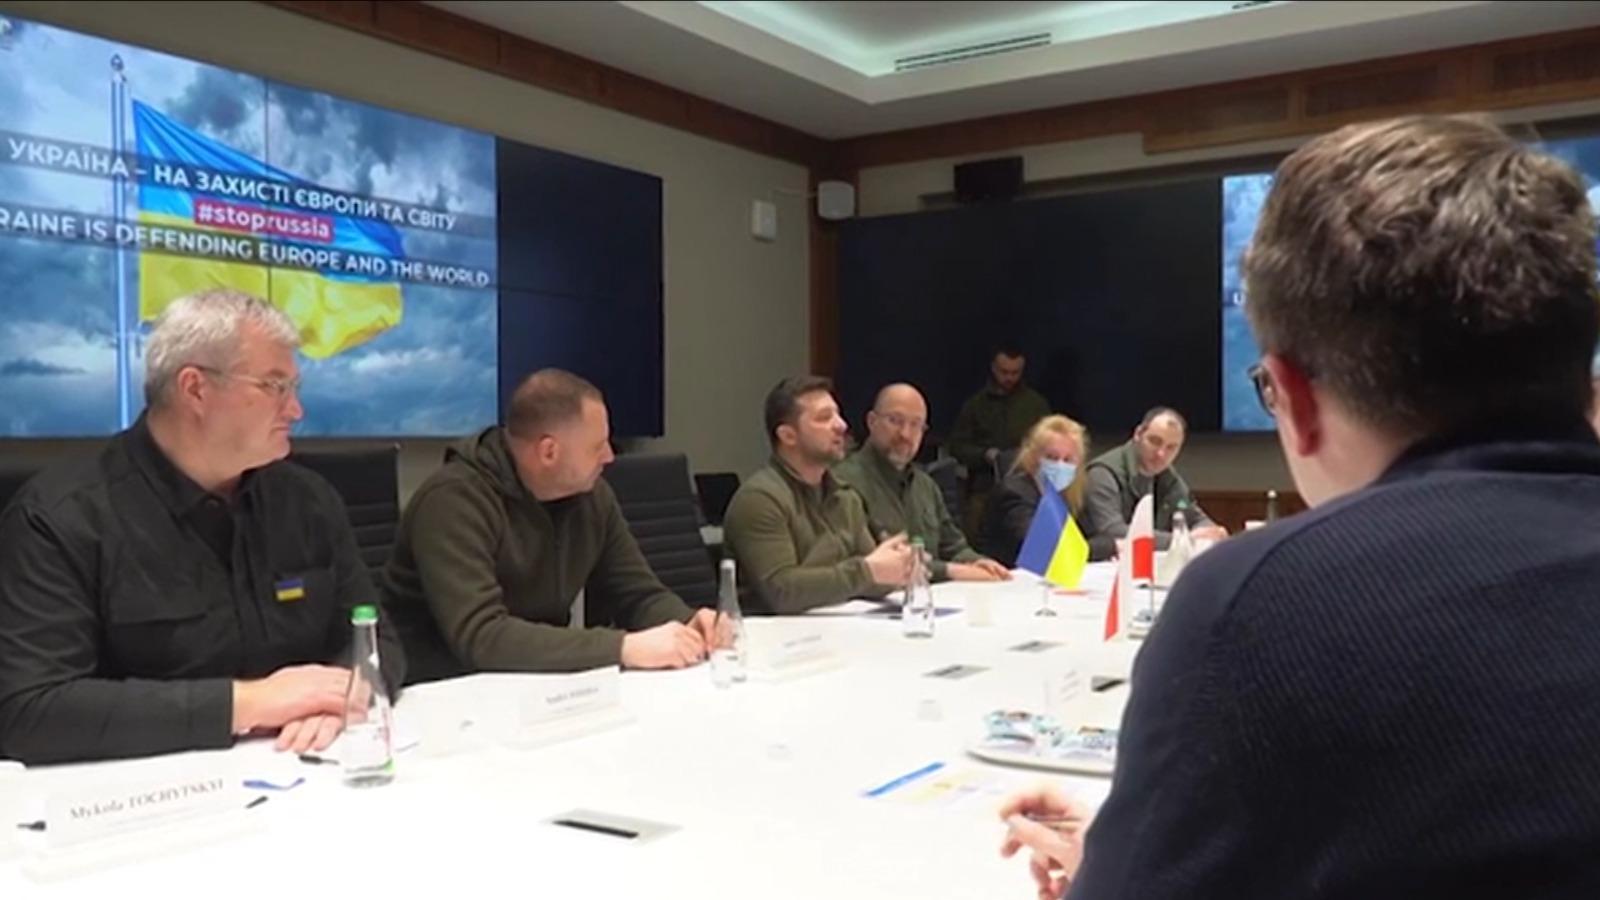 Război Rusia - Ucraina, ziua 34 LIVE TEXT. Englezii susţin că Putin foloseşte "tactici odioase" de a răpi civilii ucraineni. A început o nouă rundă de negocieri